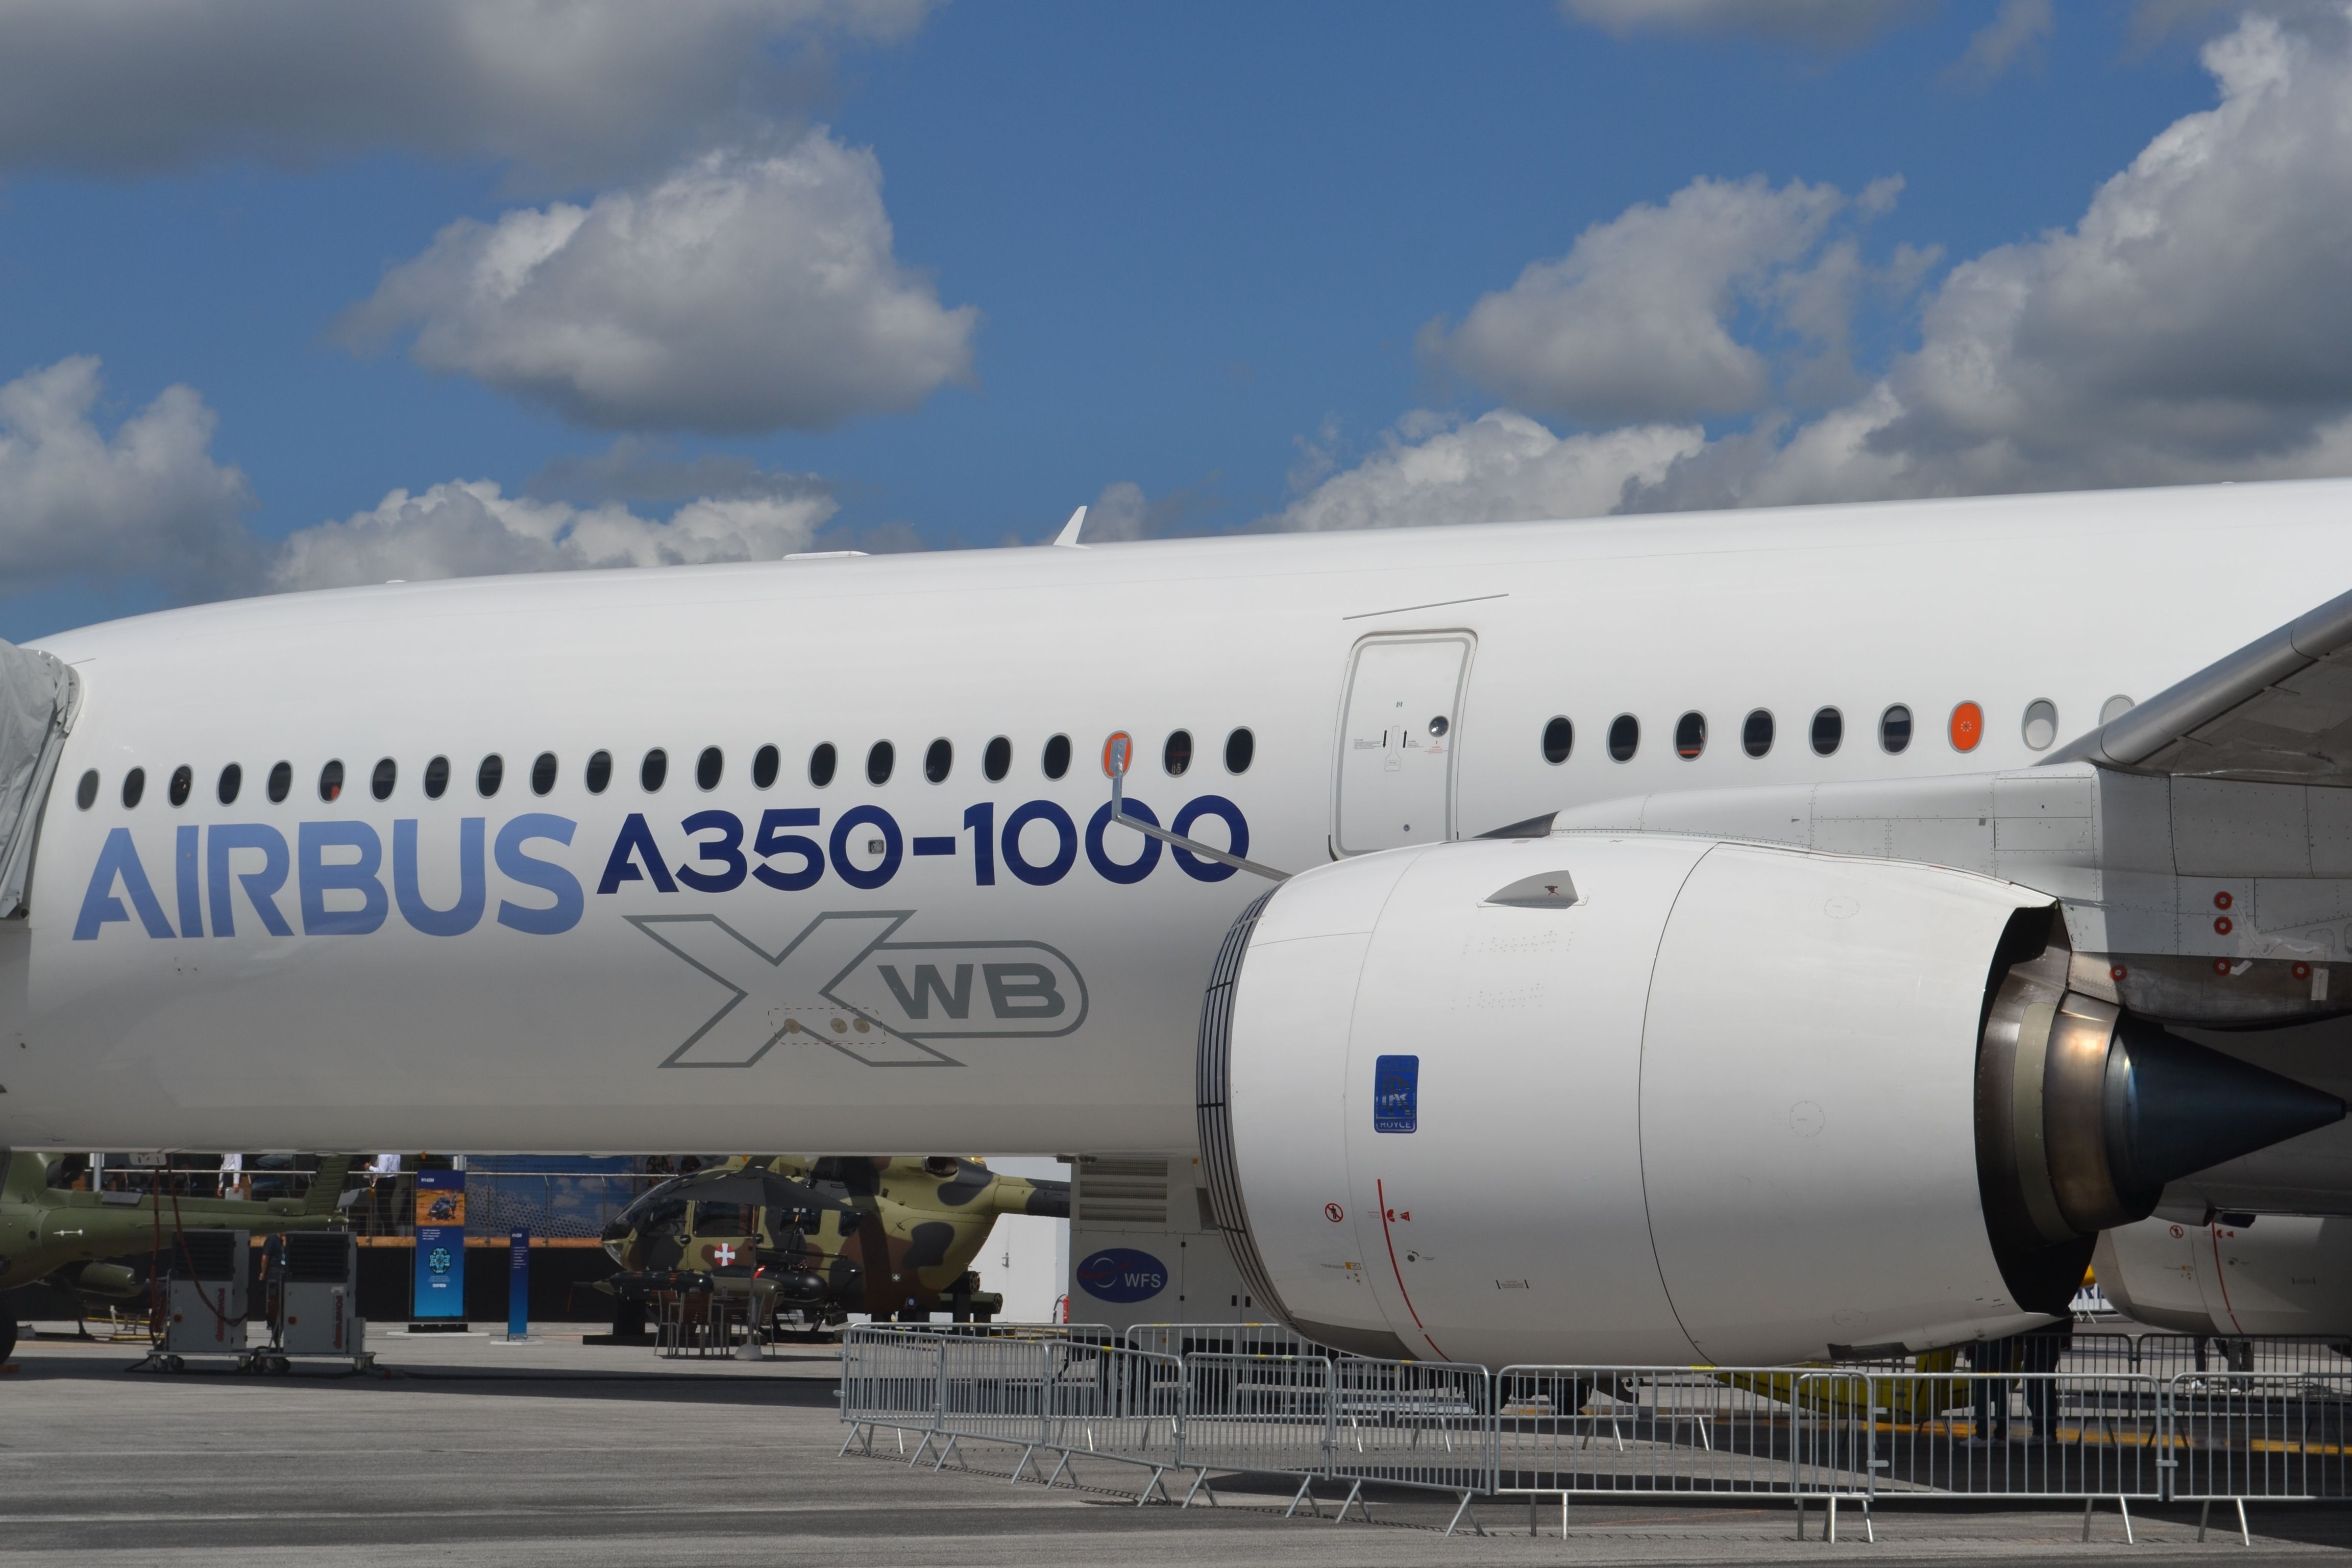 Airbus A350-1000 at Paris Air Show 2019